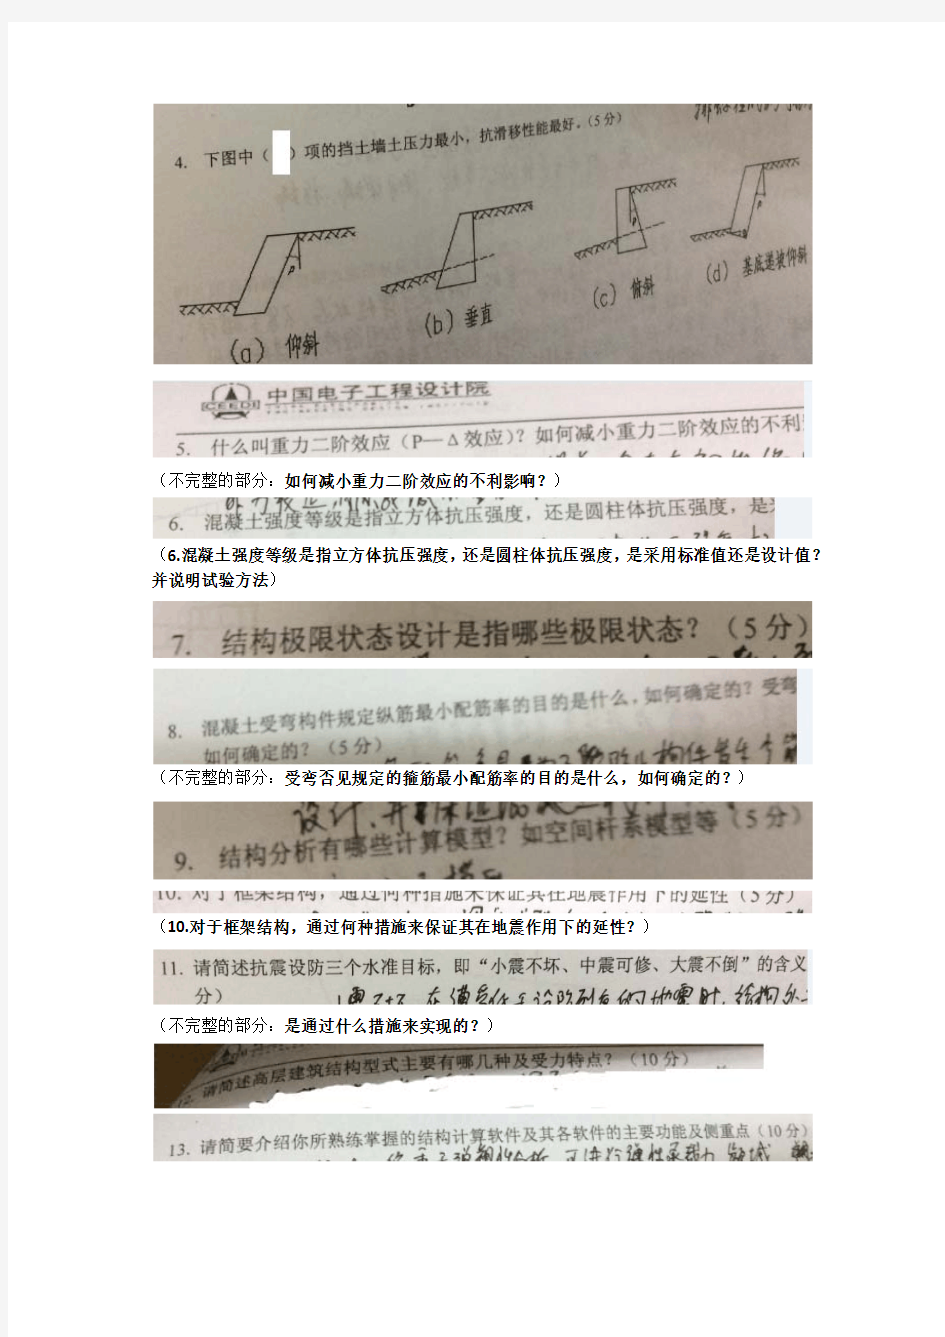 中国电子工程设计院2015年结构工程专业笔试题